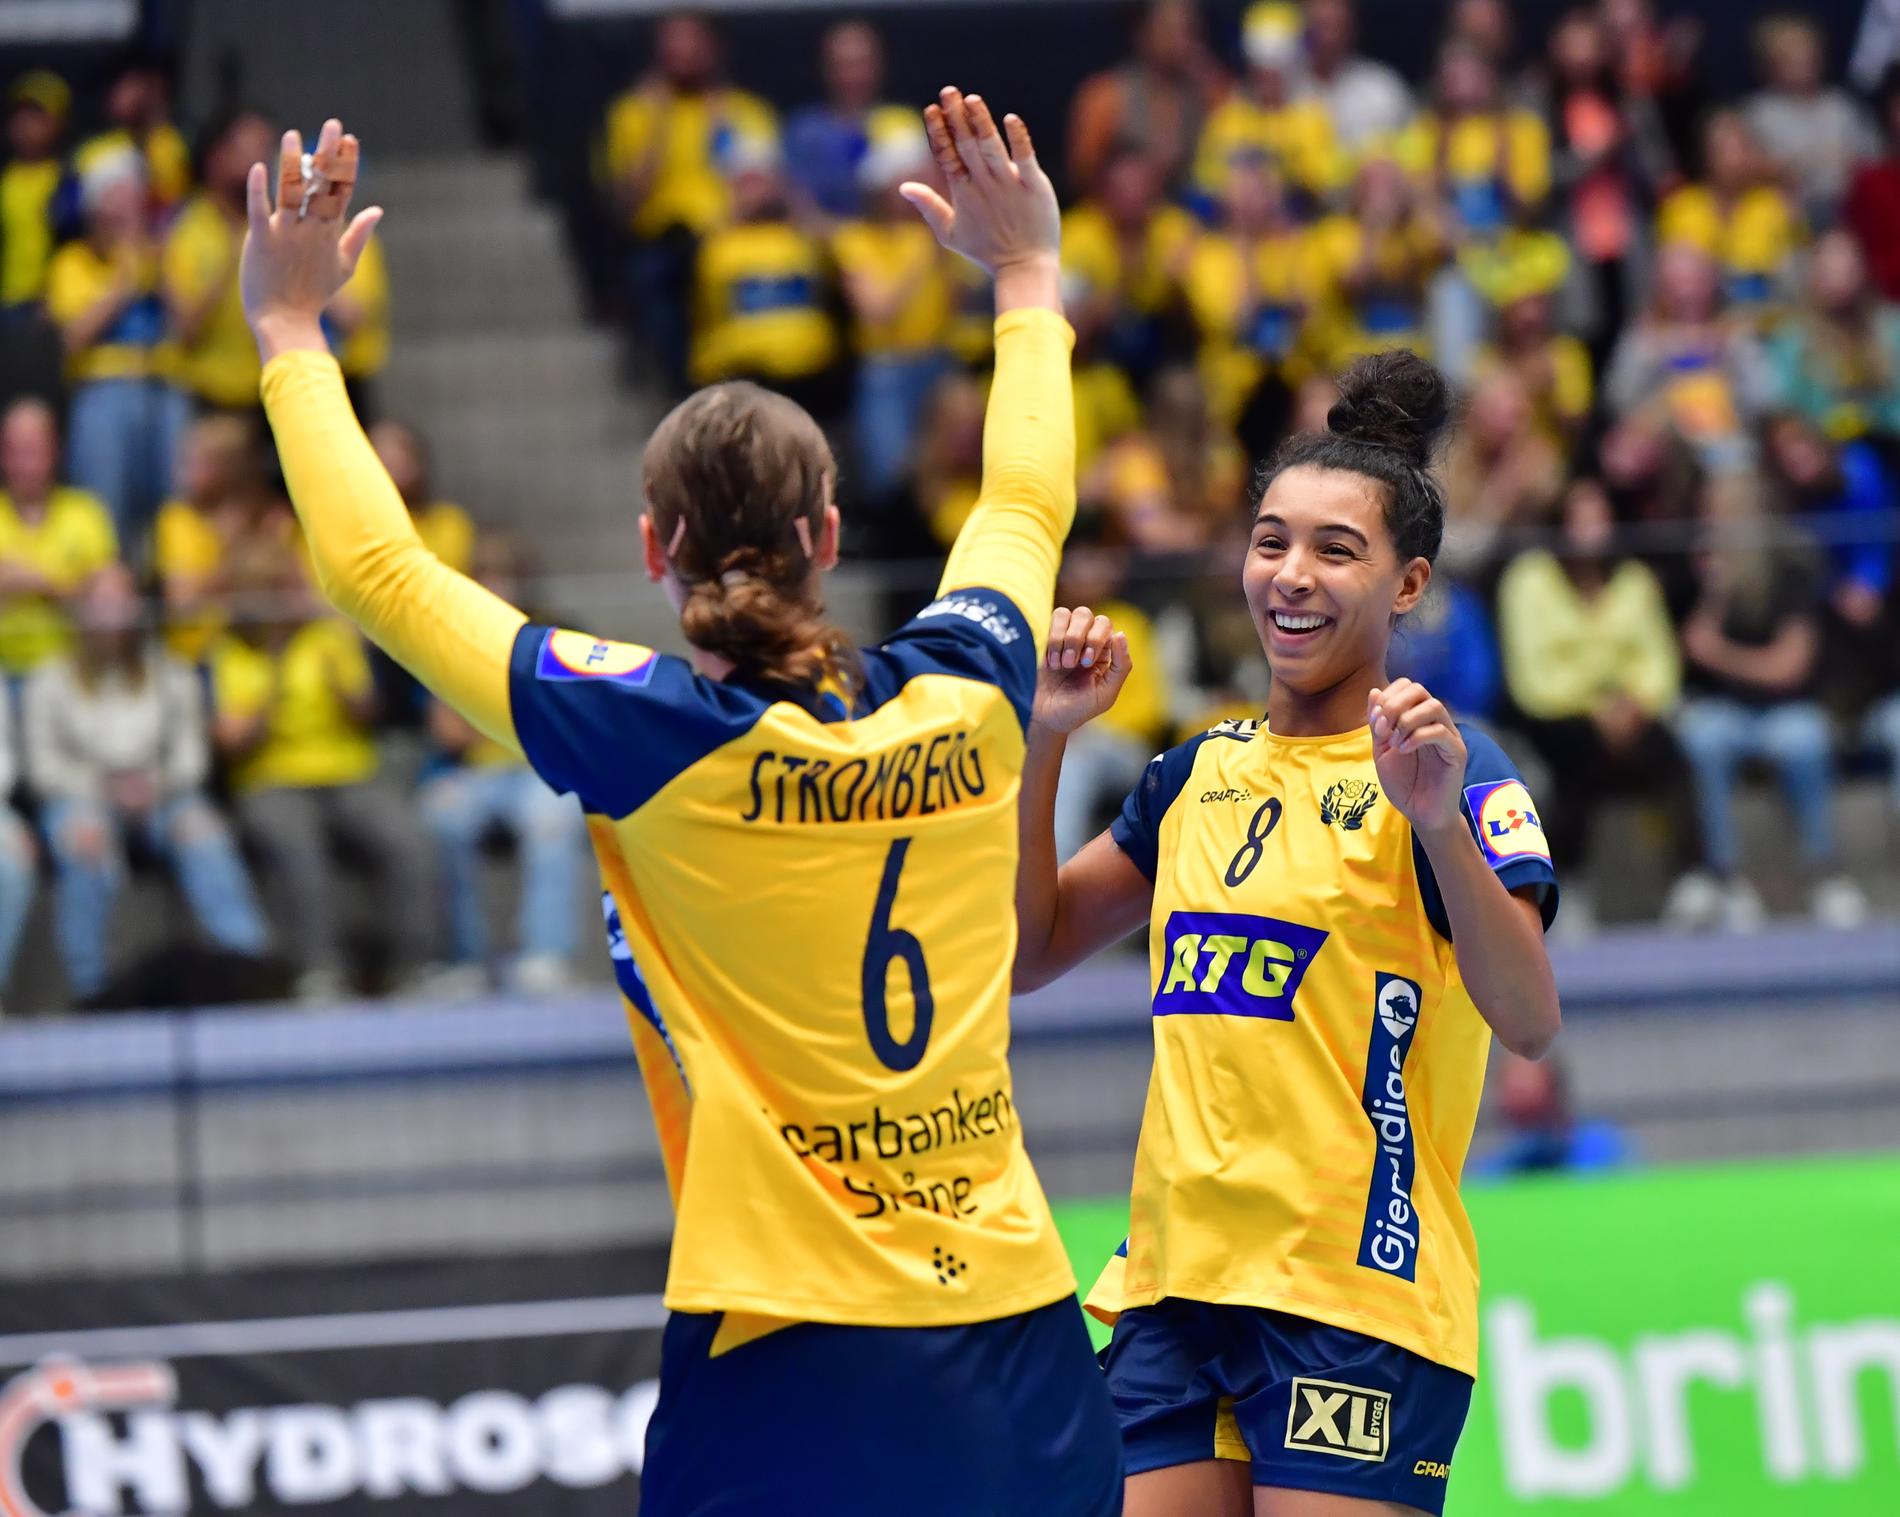 Sverige ser ut att få arrangera EM-handboll både 2026 och 2028.